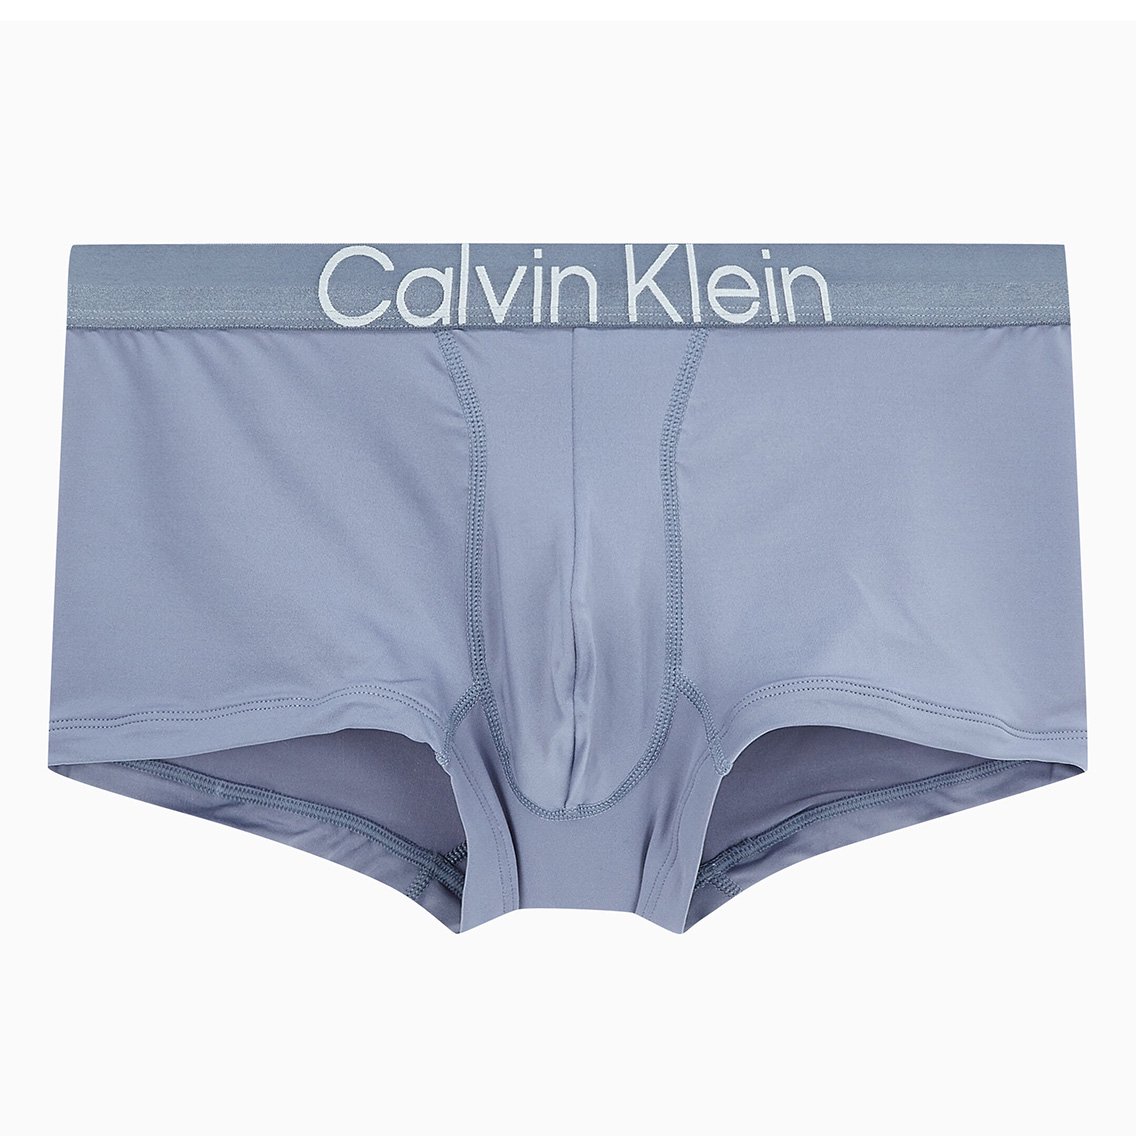 Calvin Klein(カルバンクライン)[NB2974-420]:ボクサーパンツ,男性下着